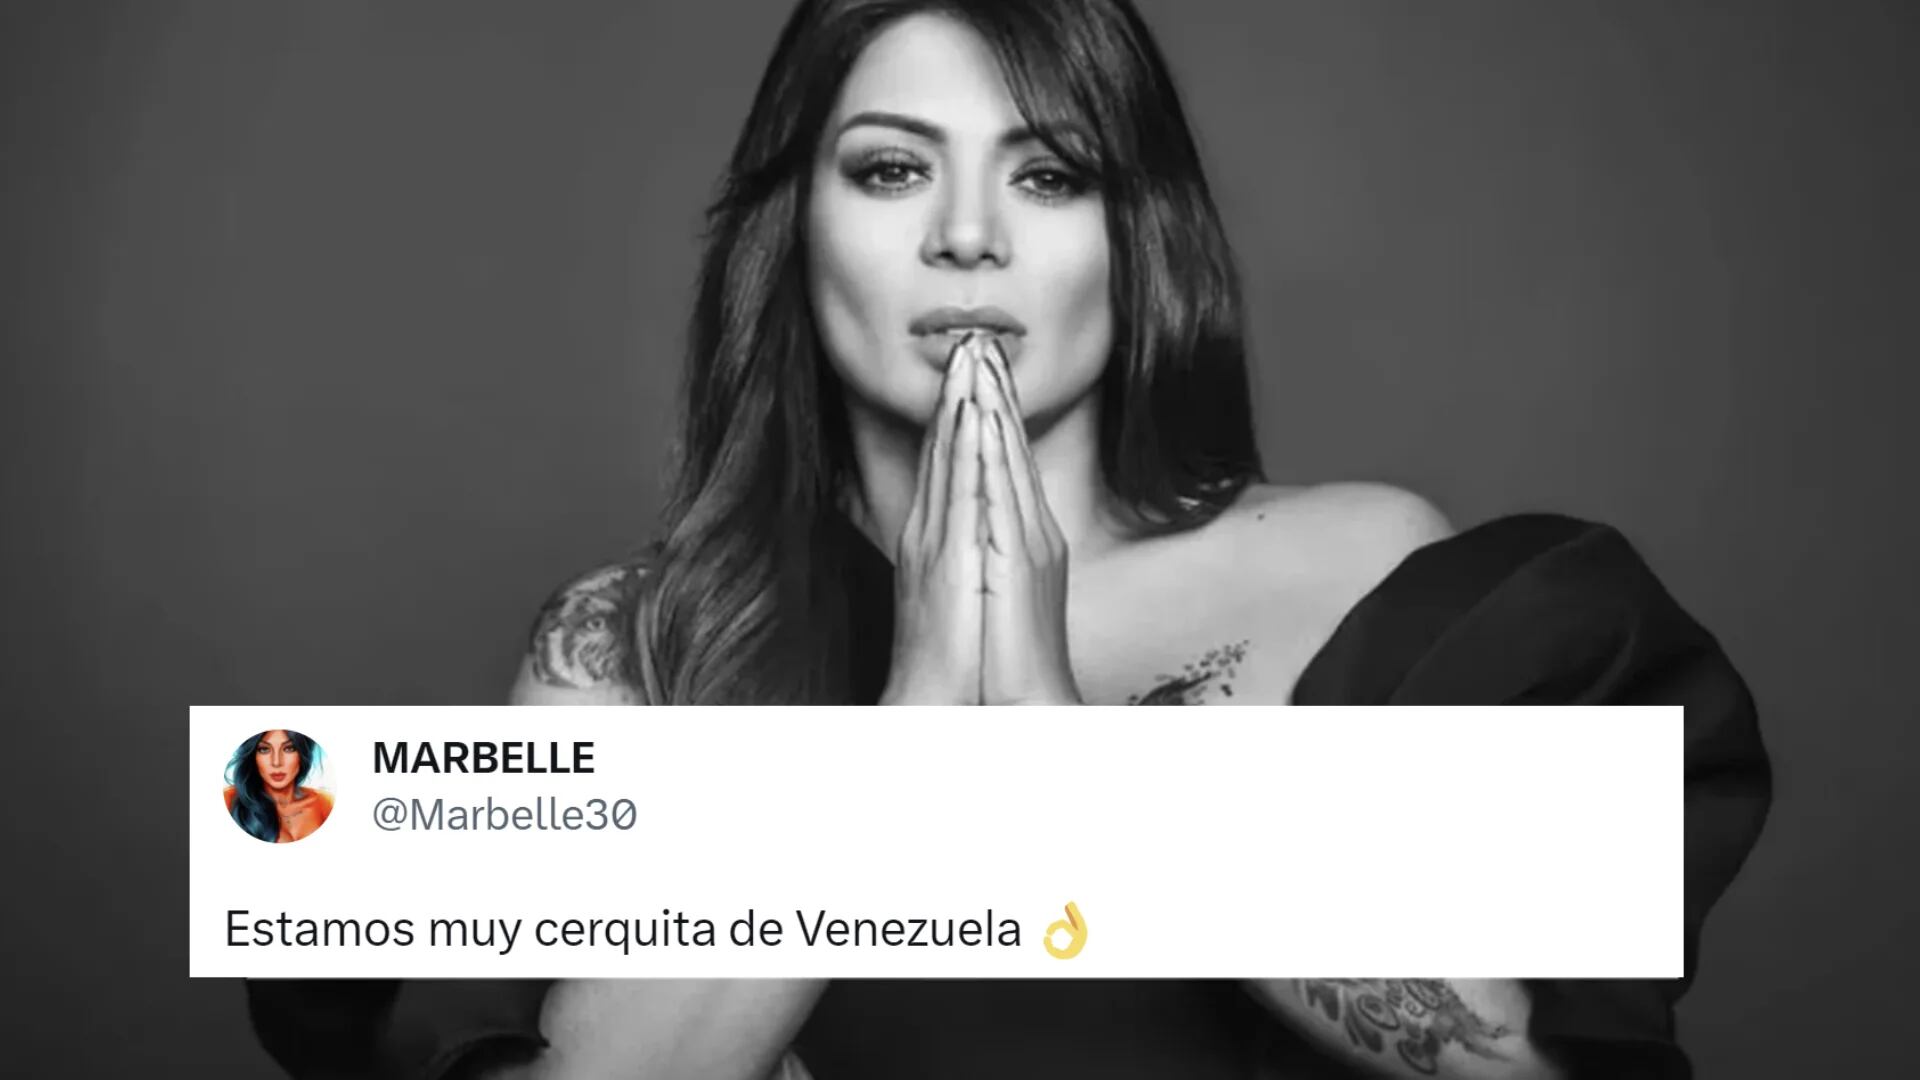 Marbelle lanza fuerte crítica al Gobierno con cifras: “Estamos muy cerquita de Venezuela”